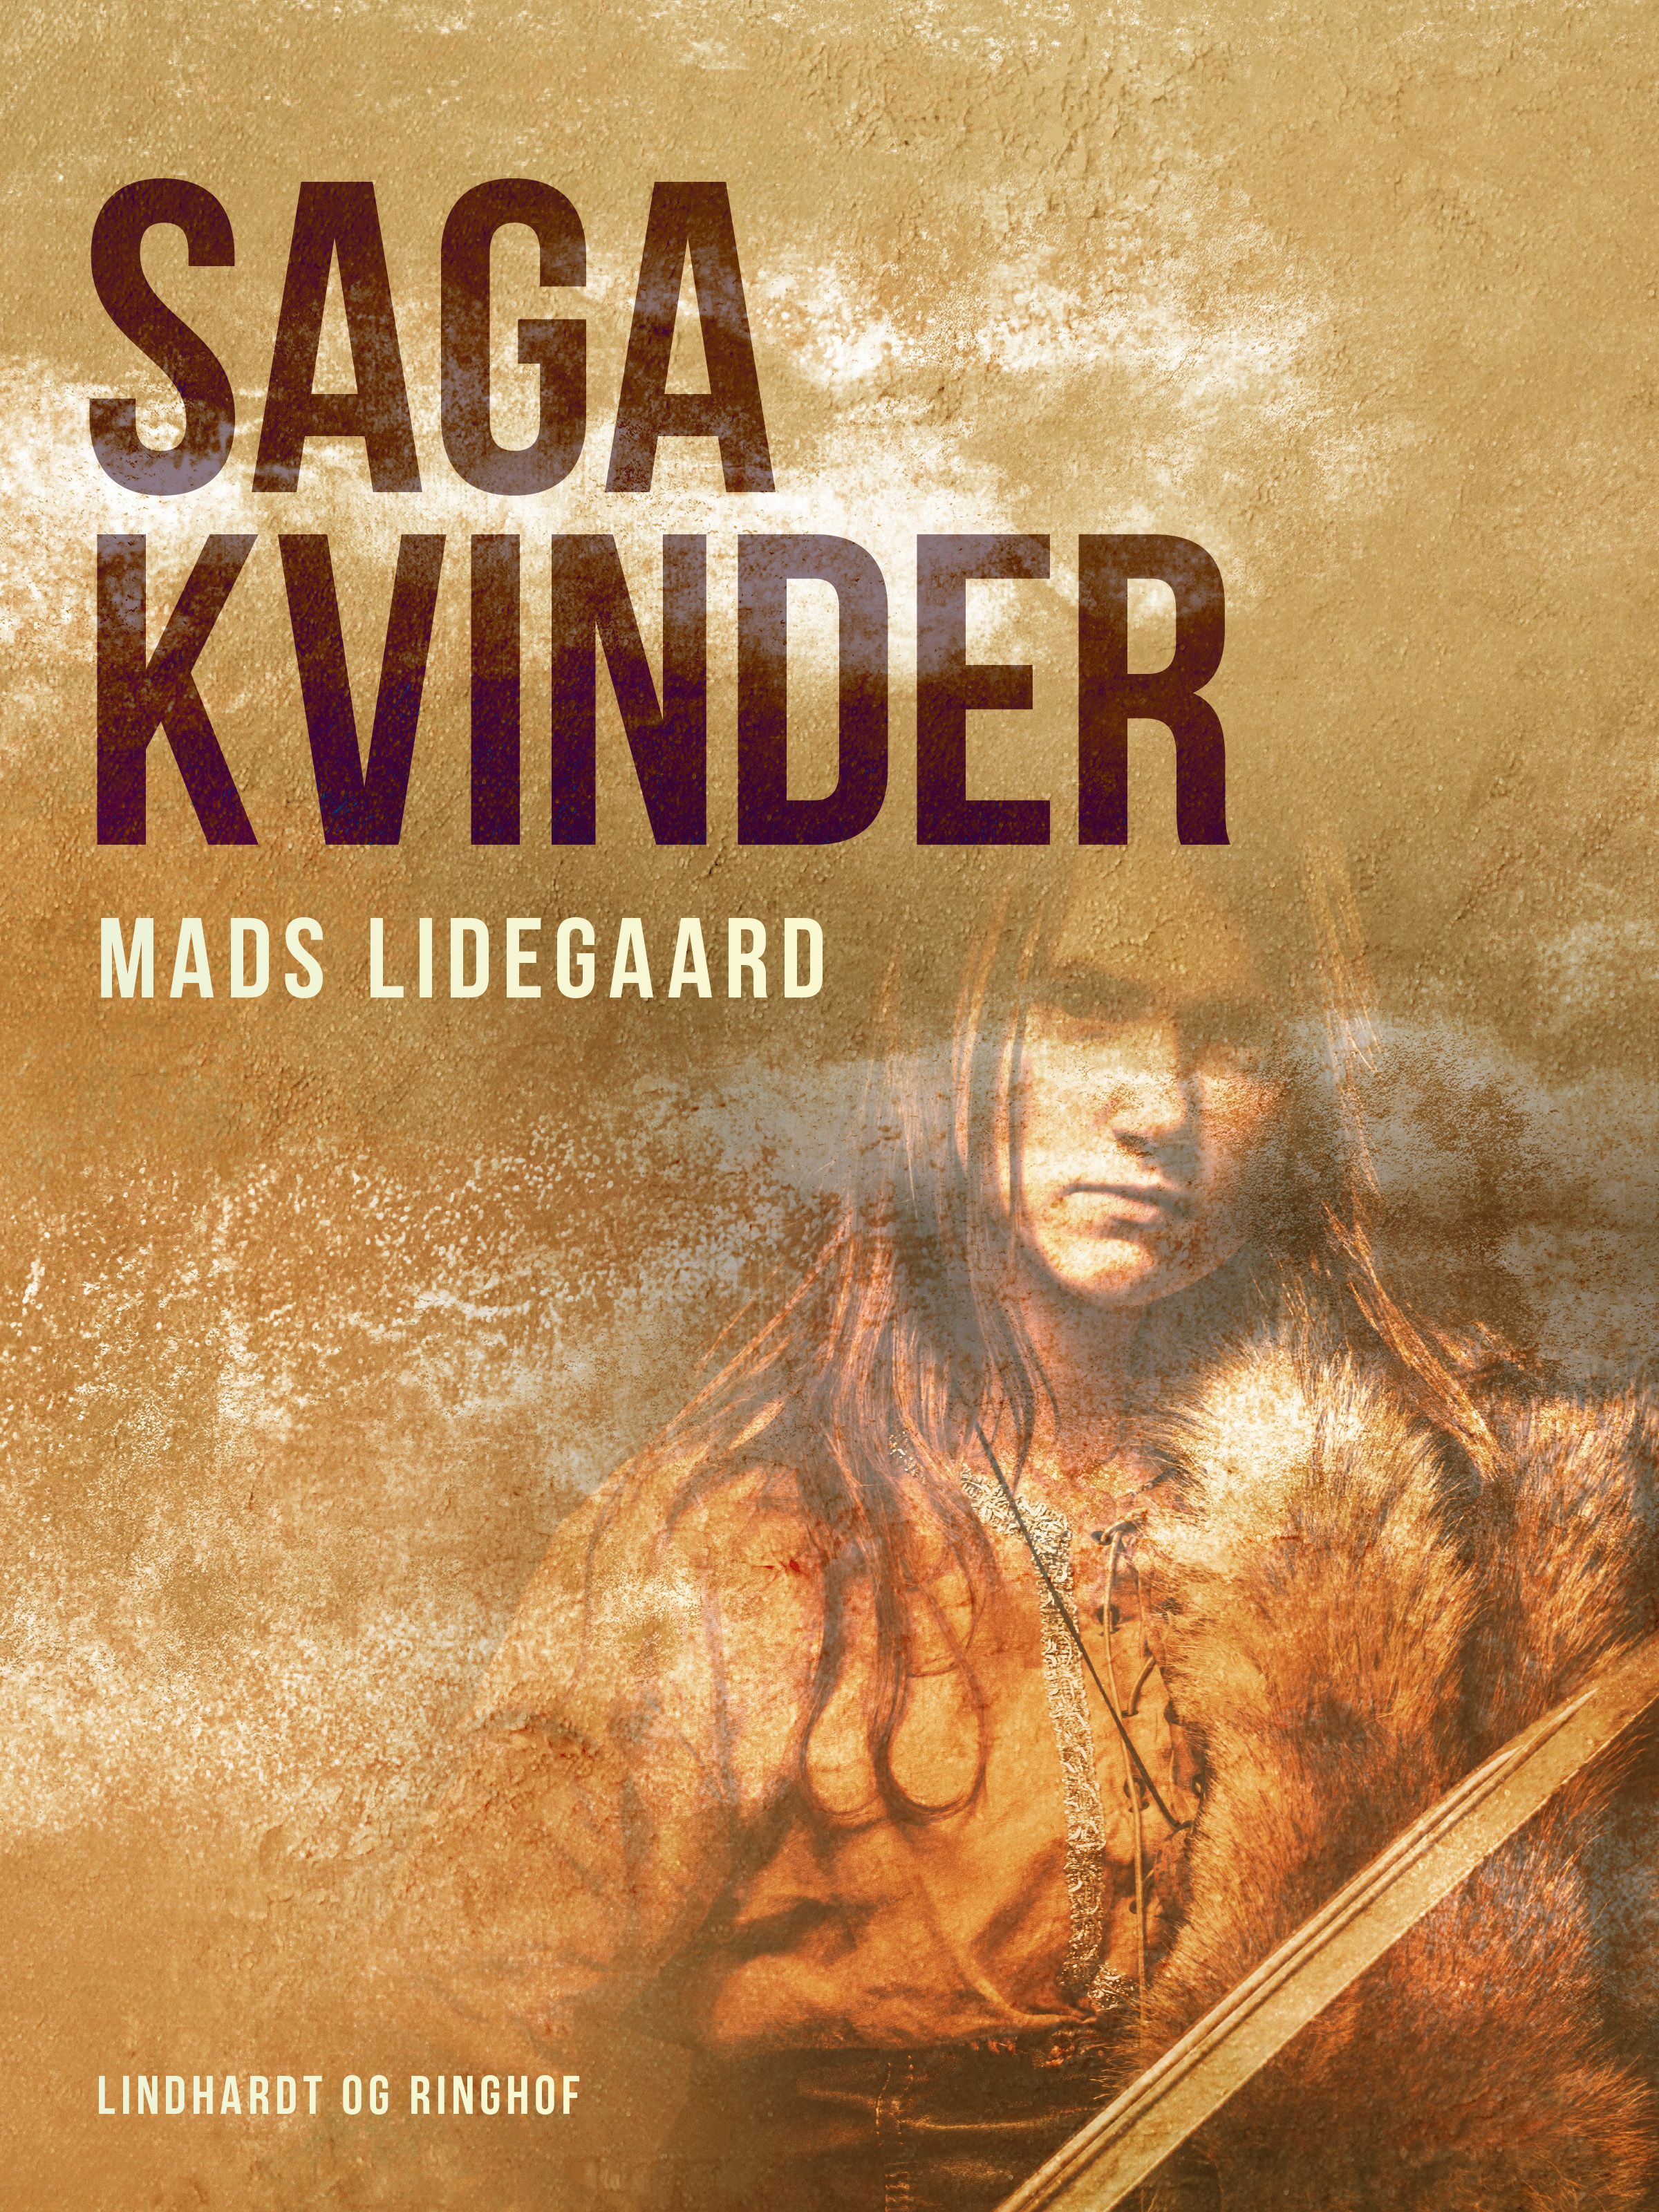 Sagakvinder, e-bog af Mads Lidegaard